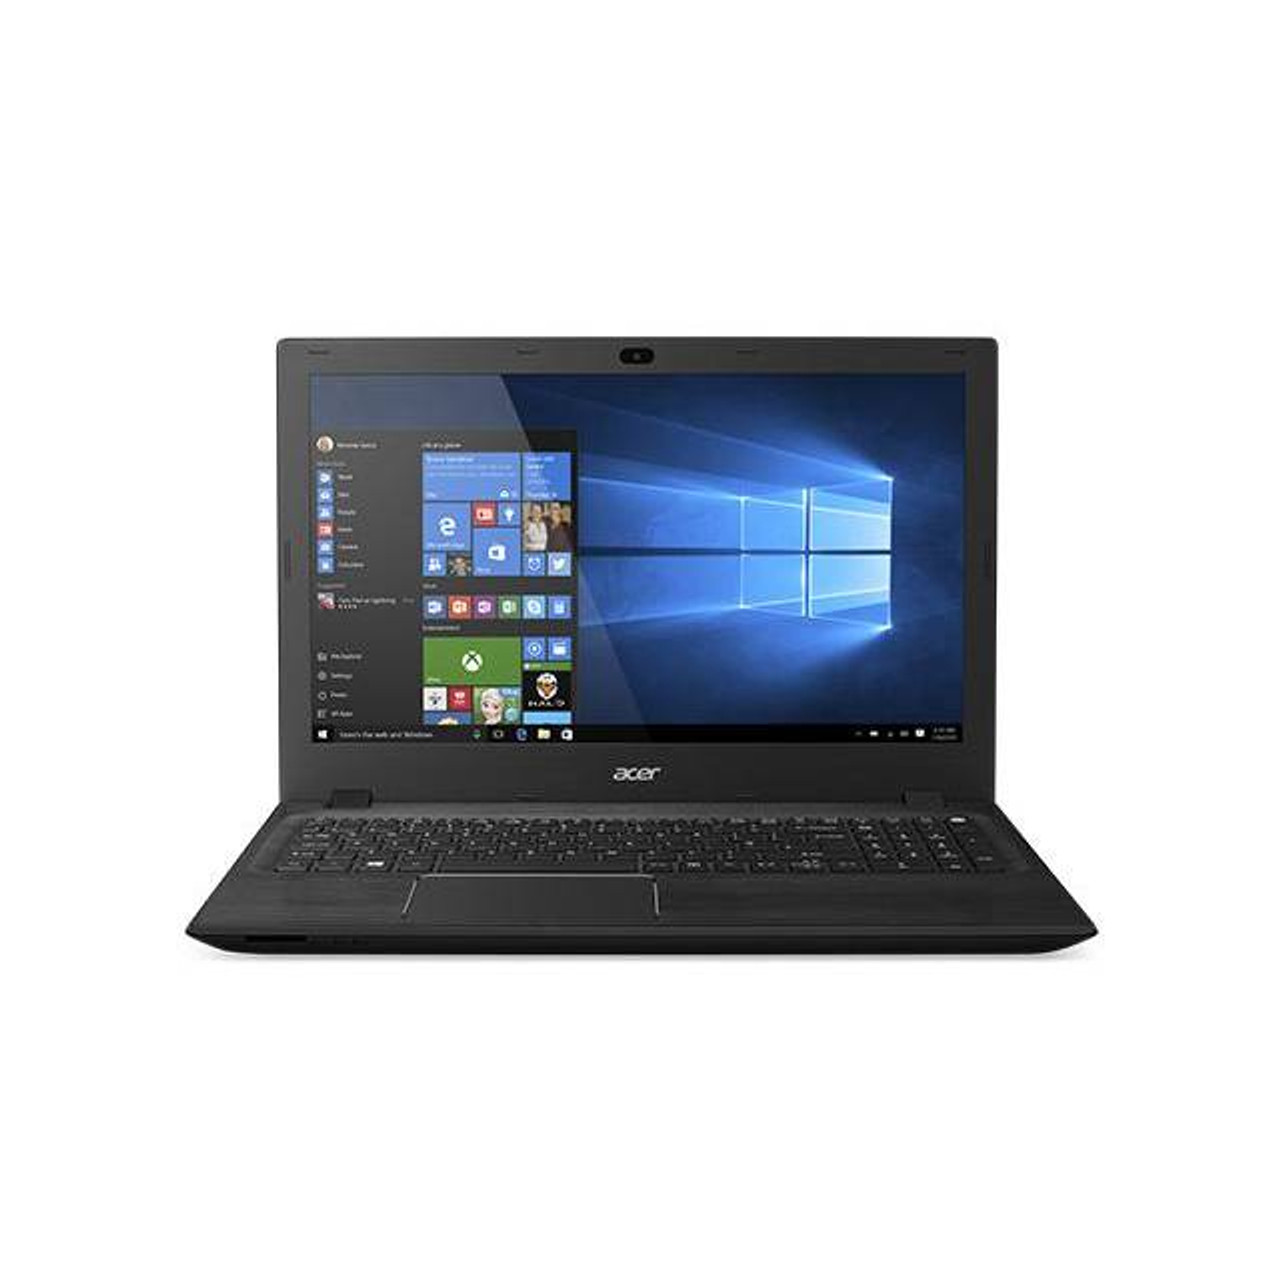 Acer Aspire F 15 F5-571-50PF 15.6 inch Intel Core i5-4210U 1.7GHz/ 8GB DDR3L/ 1TB HDD/ DVD±RW/ USB3.0/ Windows 10 Home Notebook (Black)